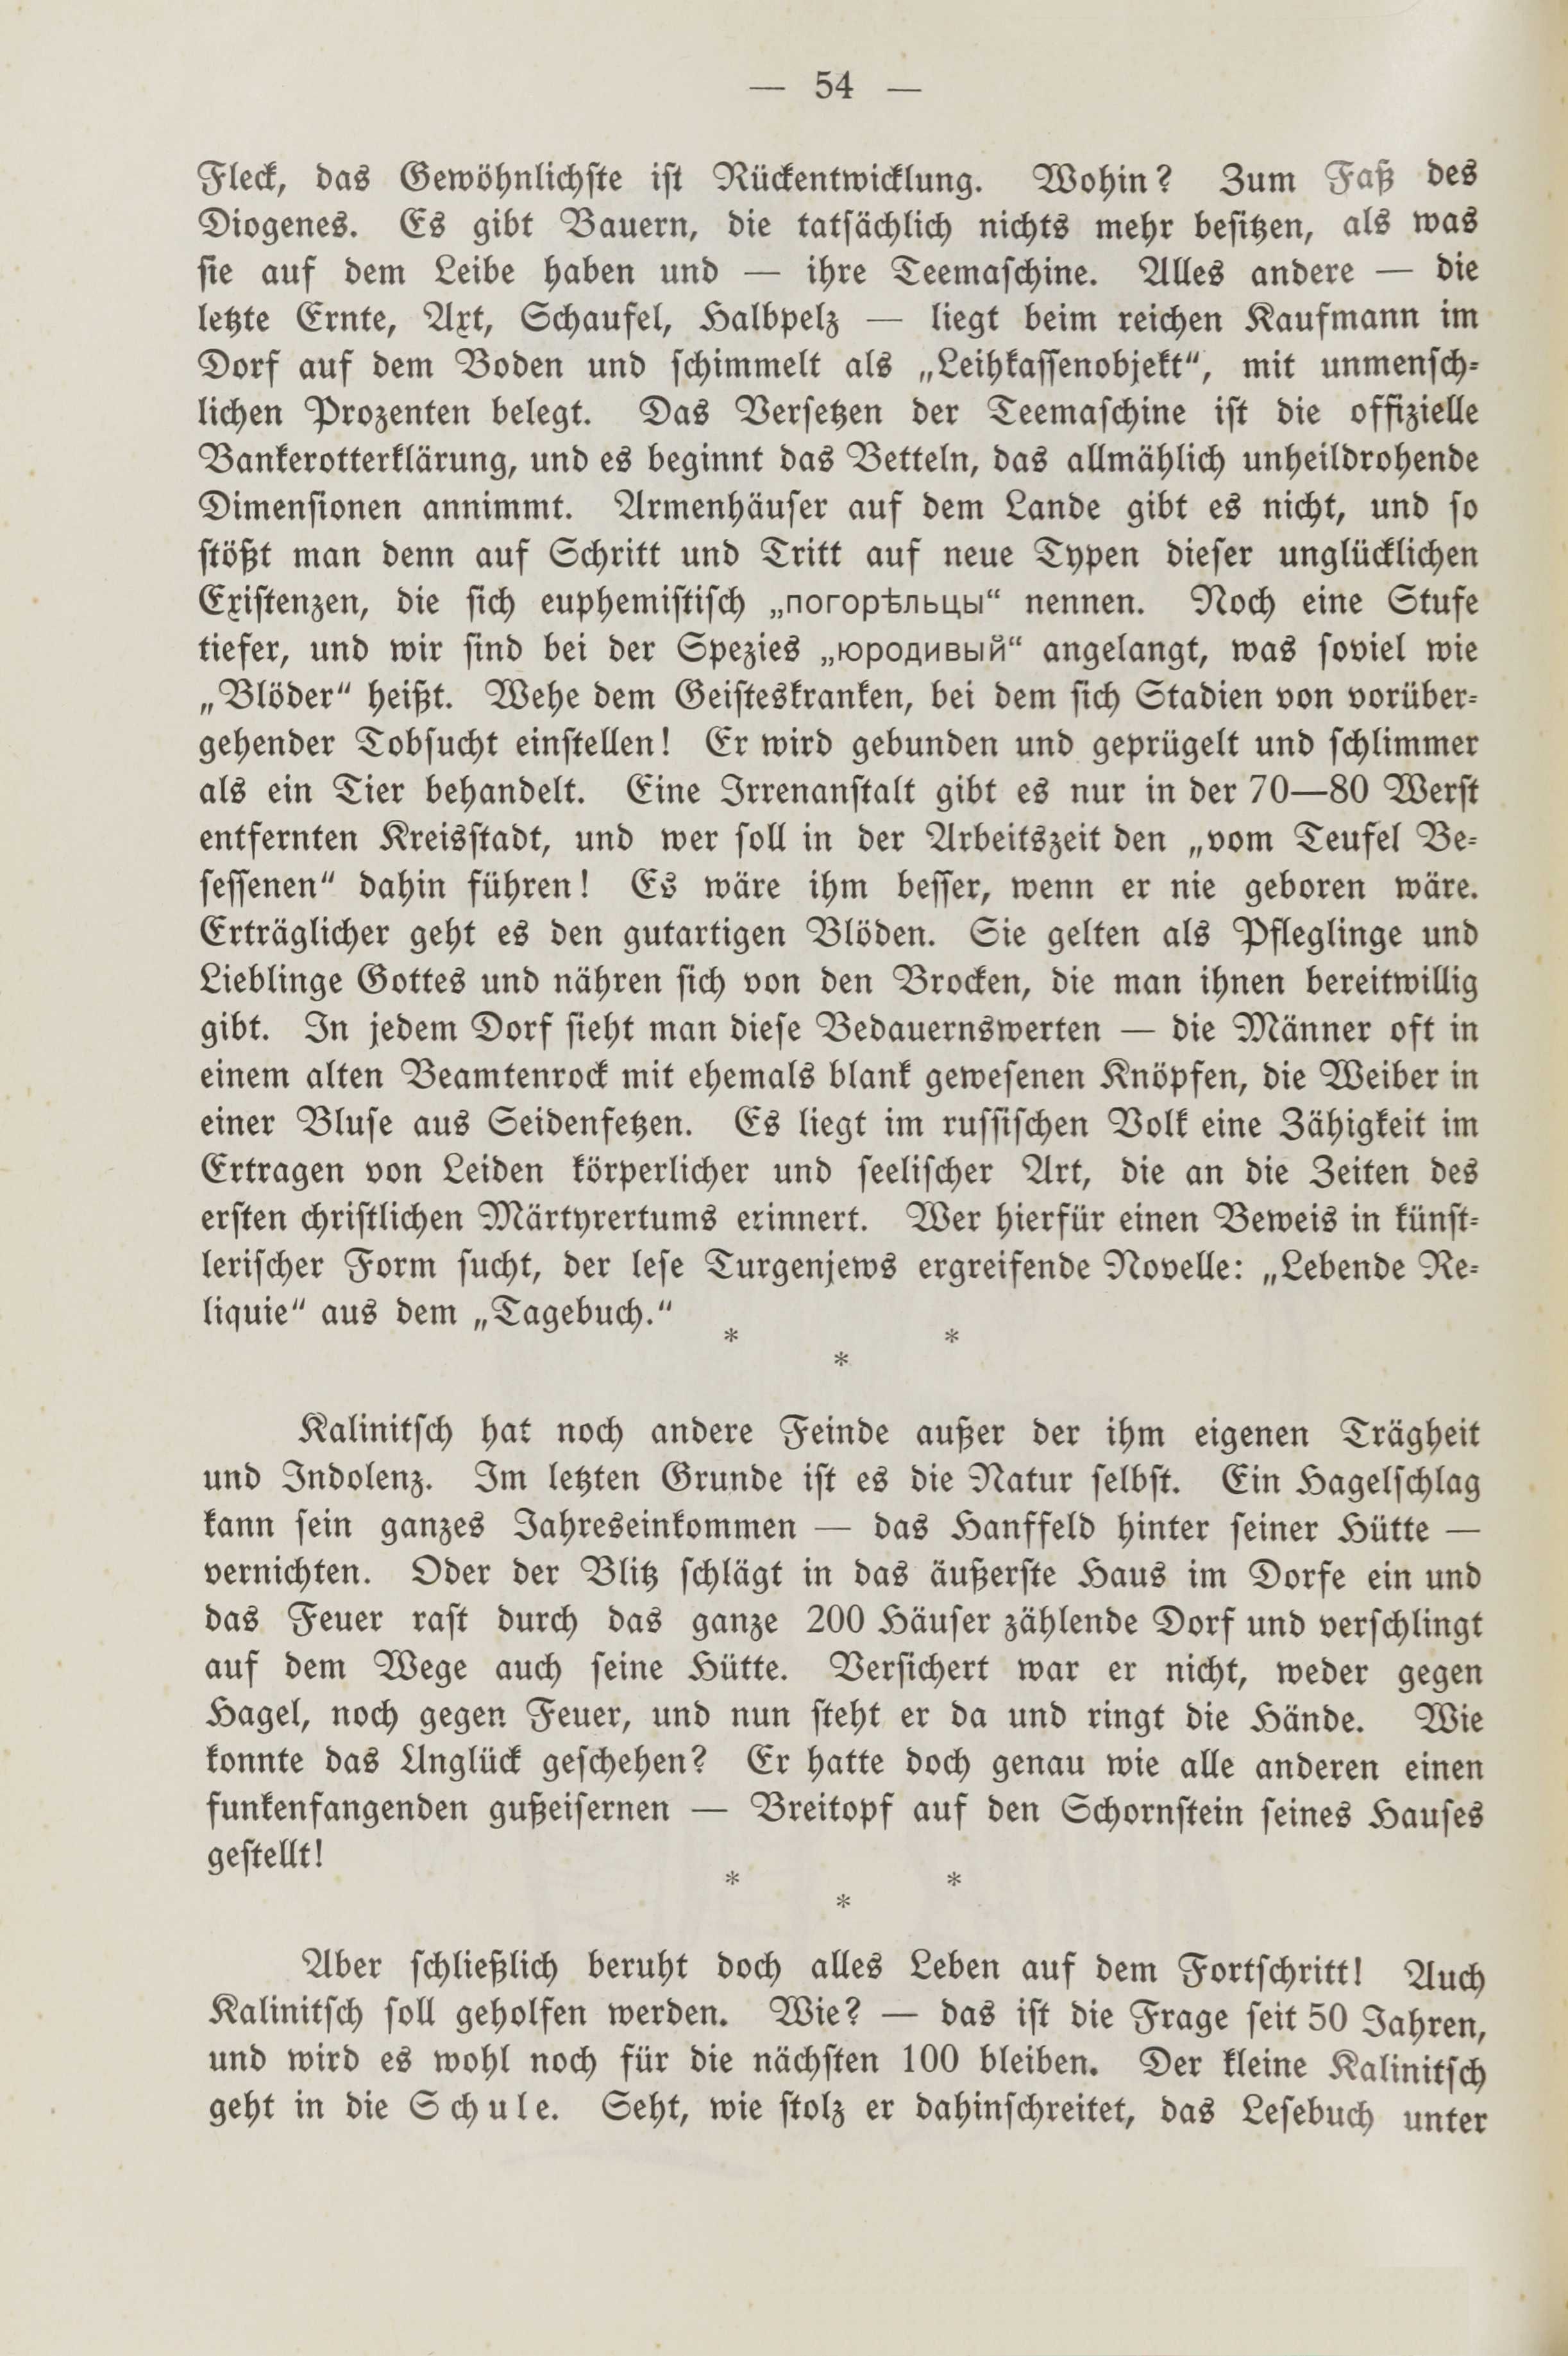 Deutsche Monatsschrift für Russland [2] (1913) | 58. (54) Põhitekst